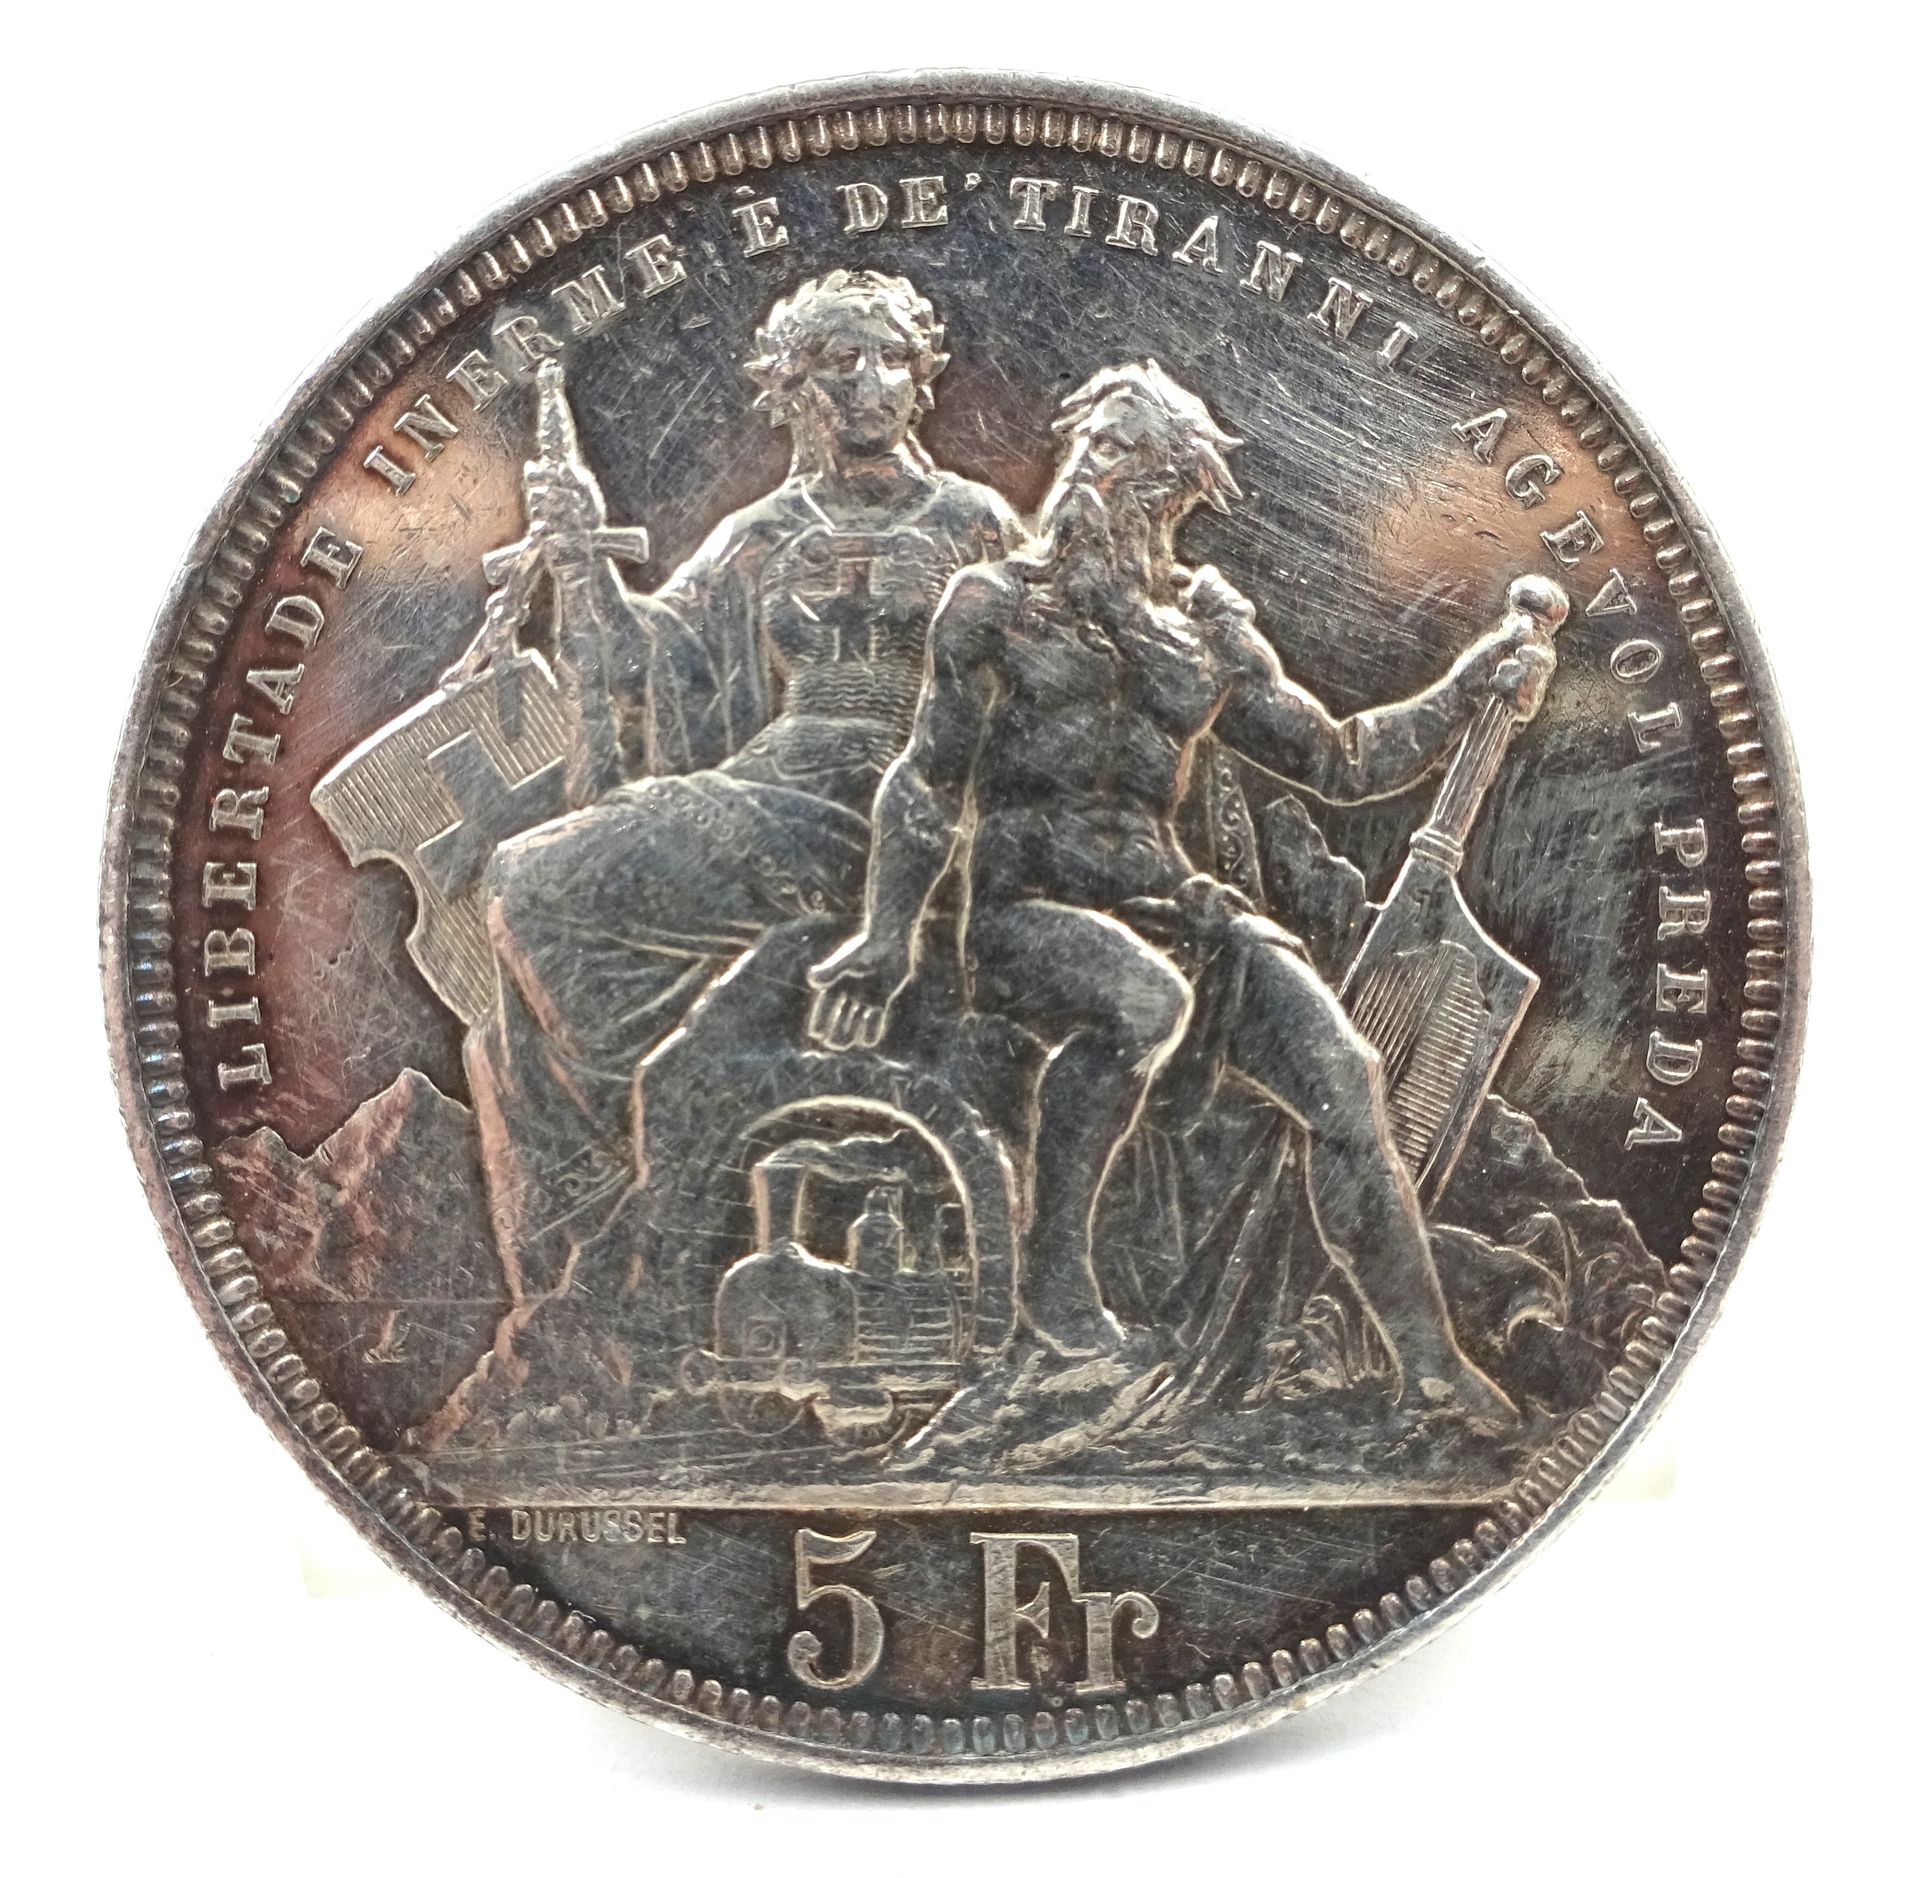 Null Pièce de 5 francs suisses en argent, Lugano, 1883. 25,01 g net.